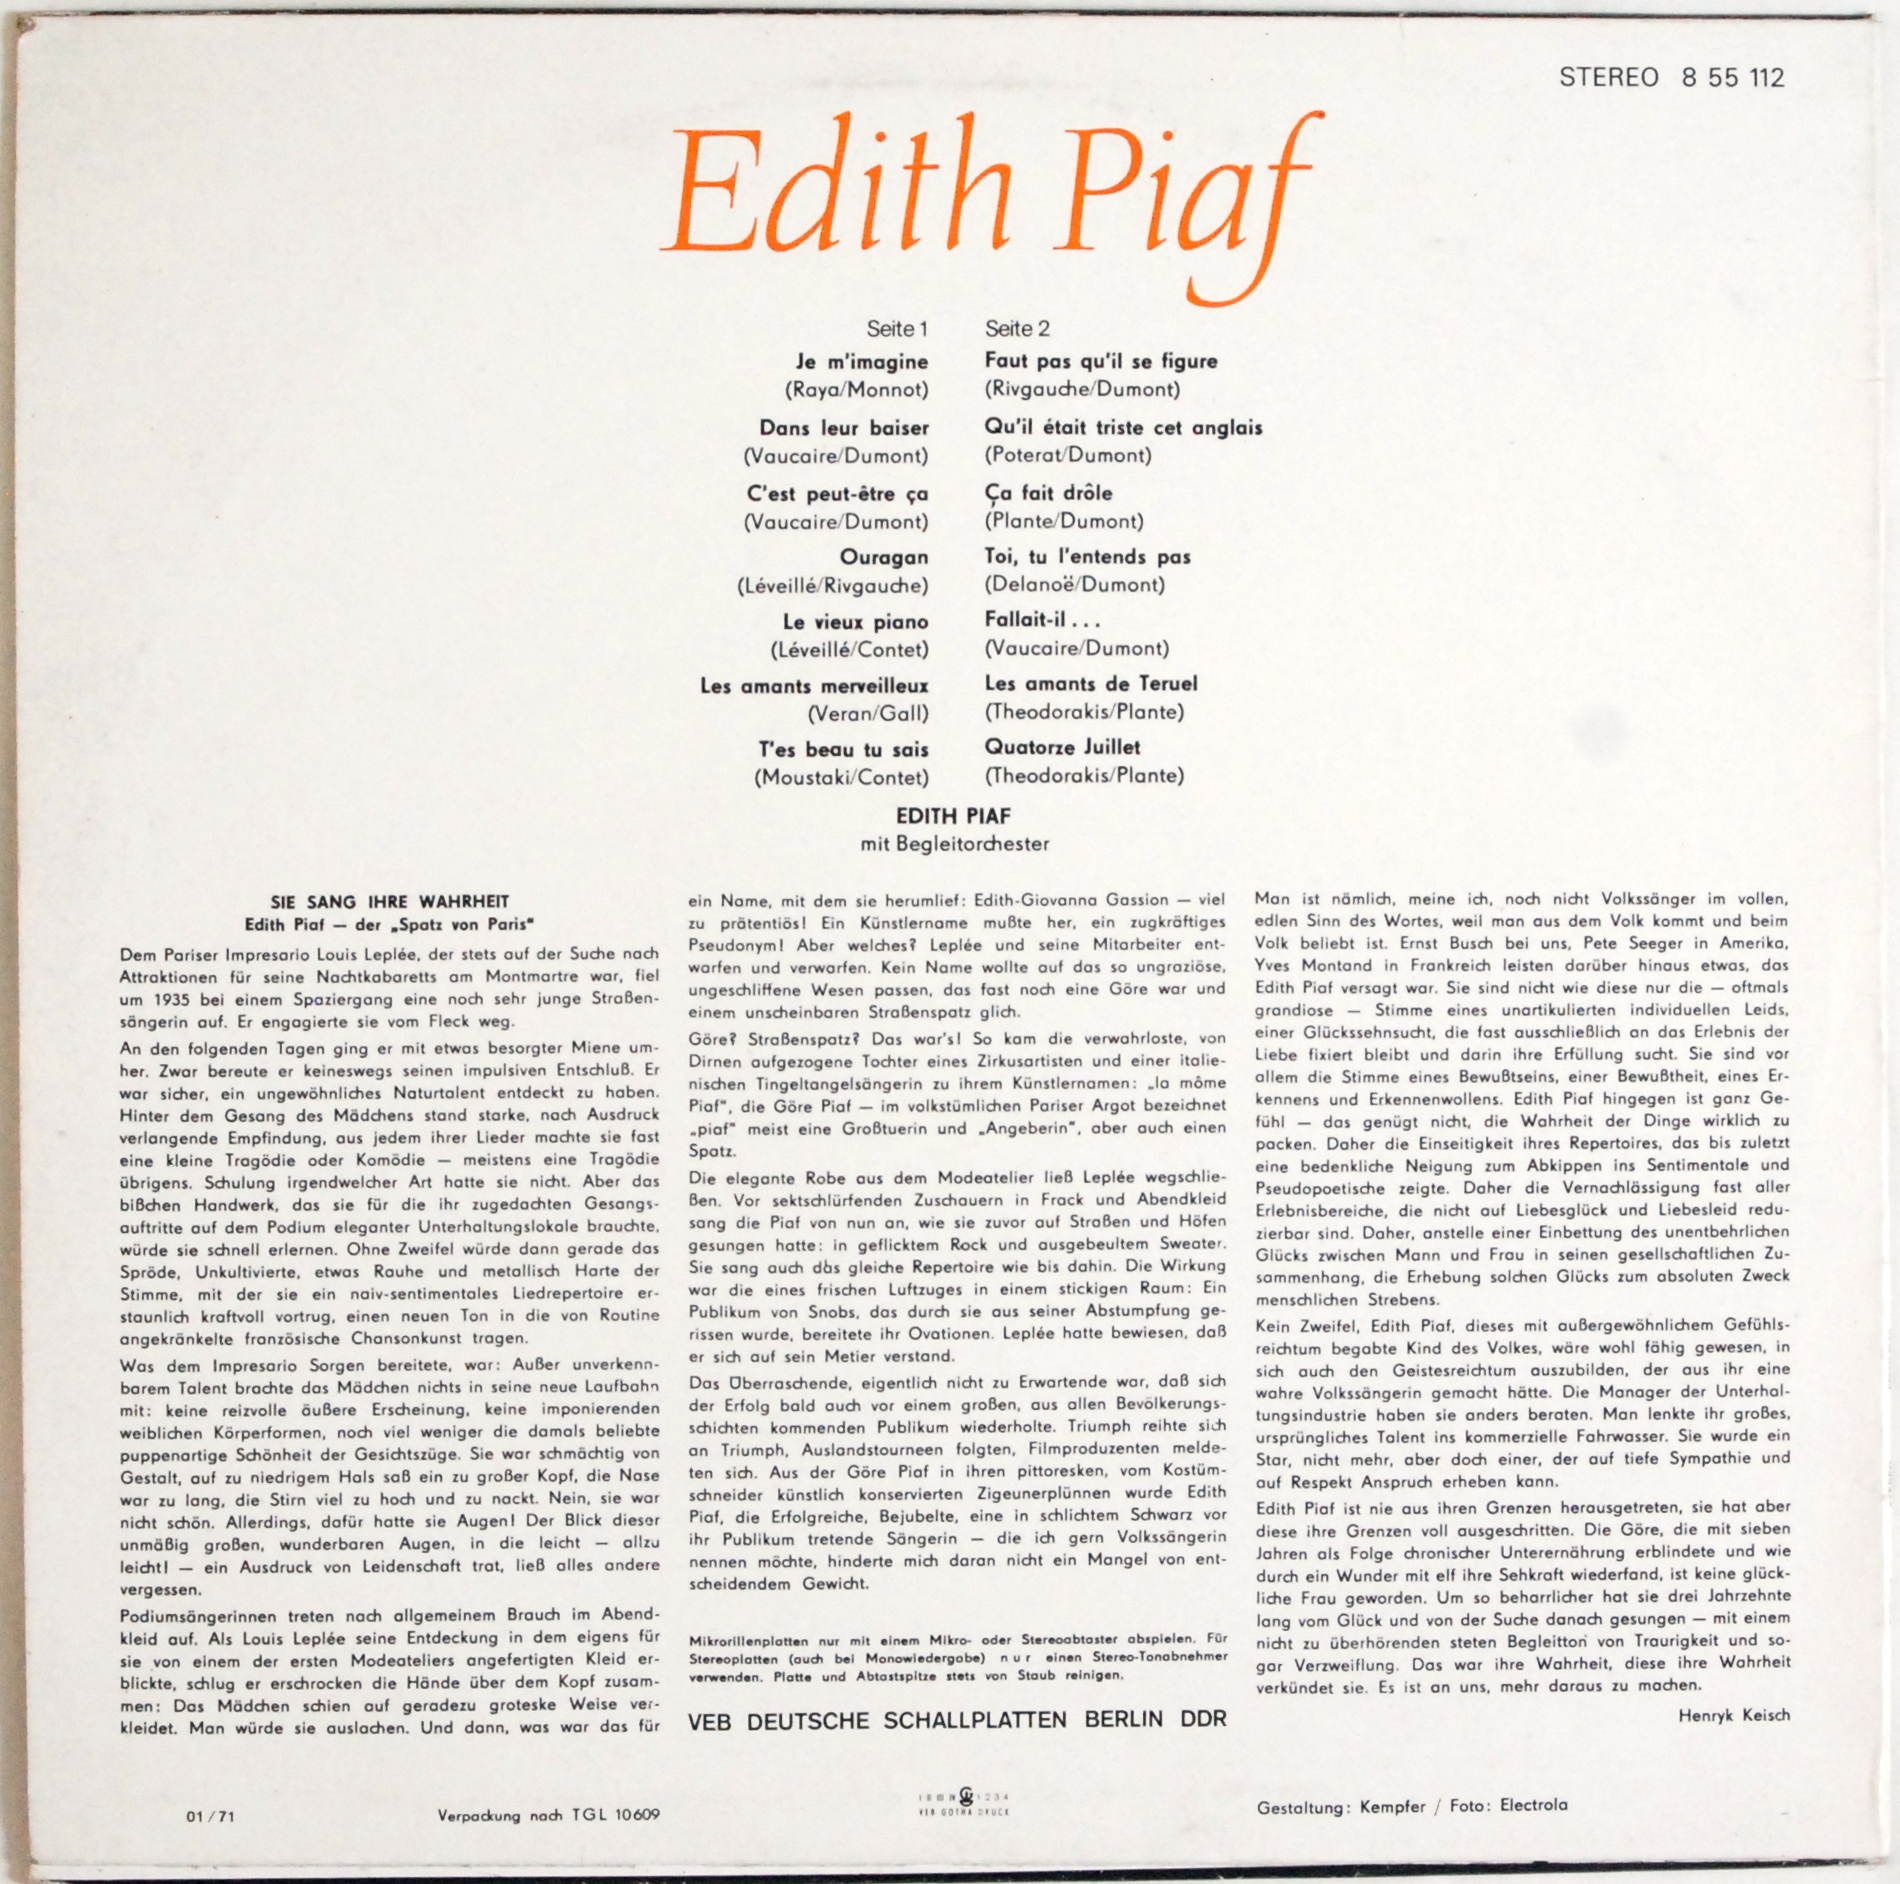 Edith Piaf (Amiga)